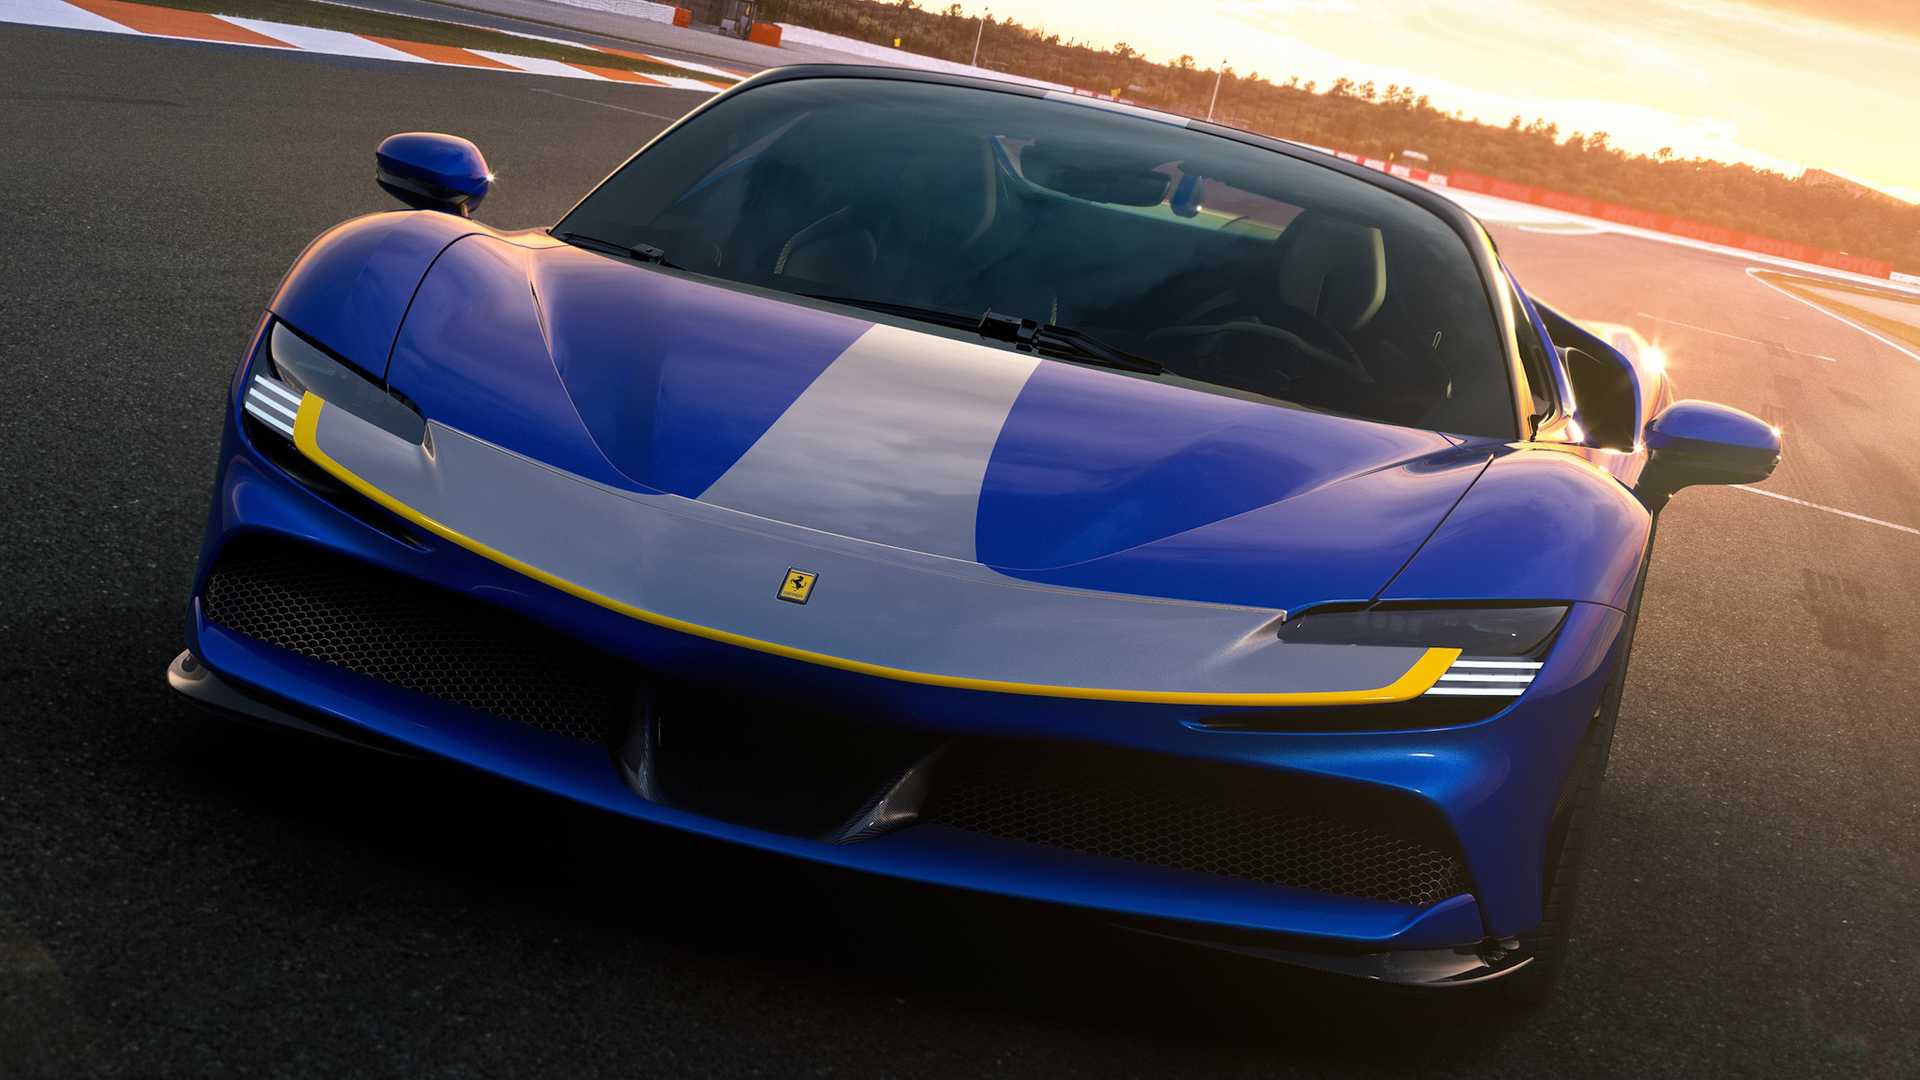 Siap Memproduksi Mobil Listrik, Ferrari Mempersiapkan 1 Line Produksi Khusus EV